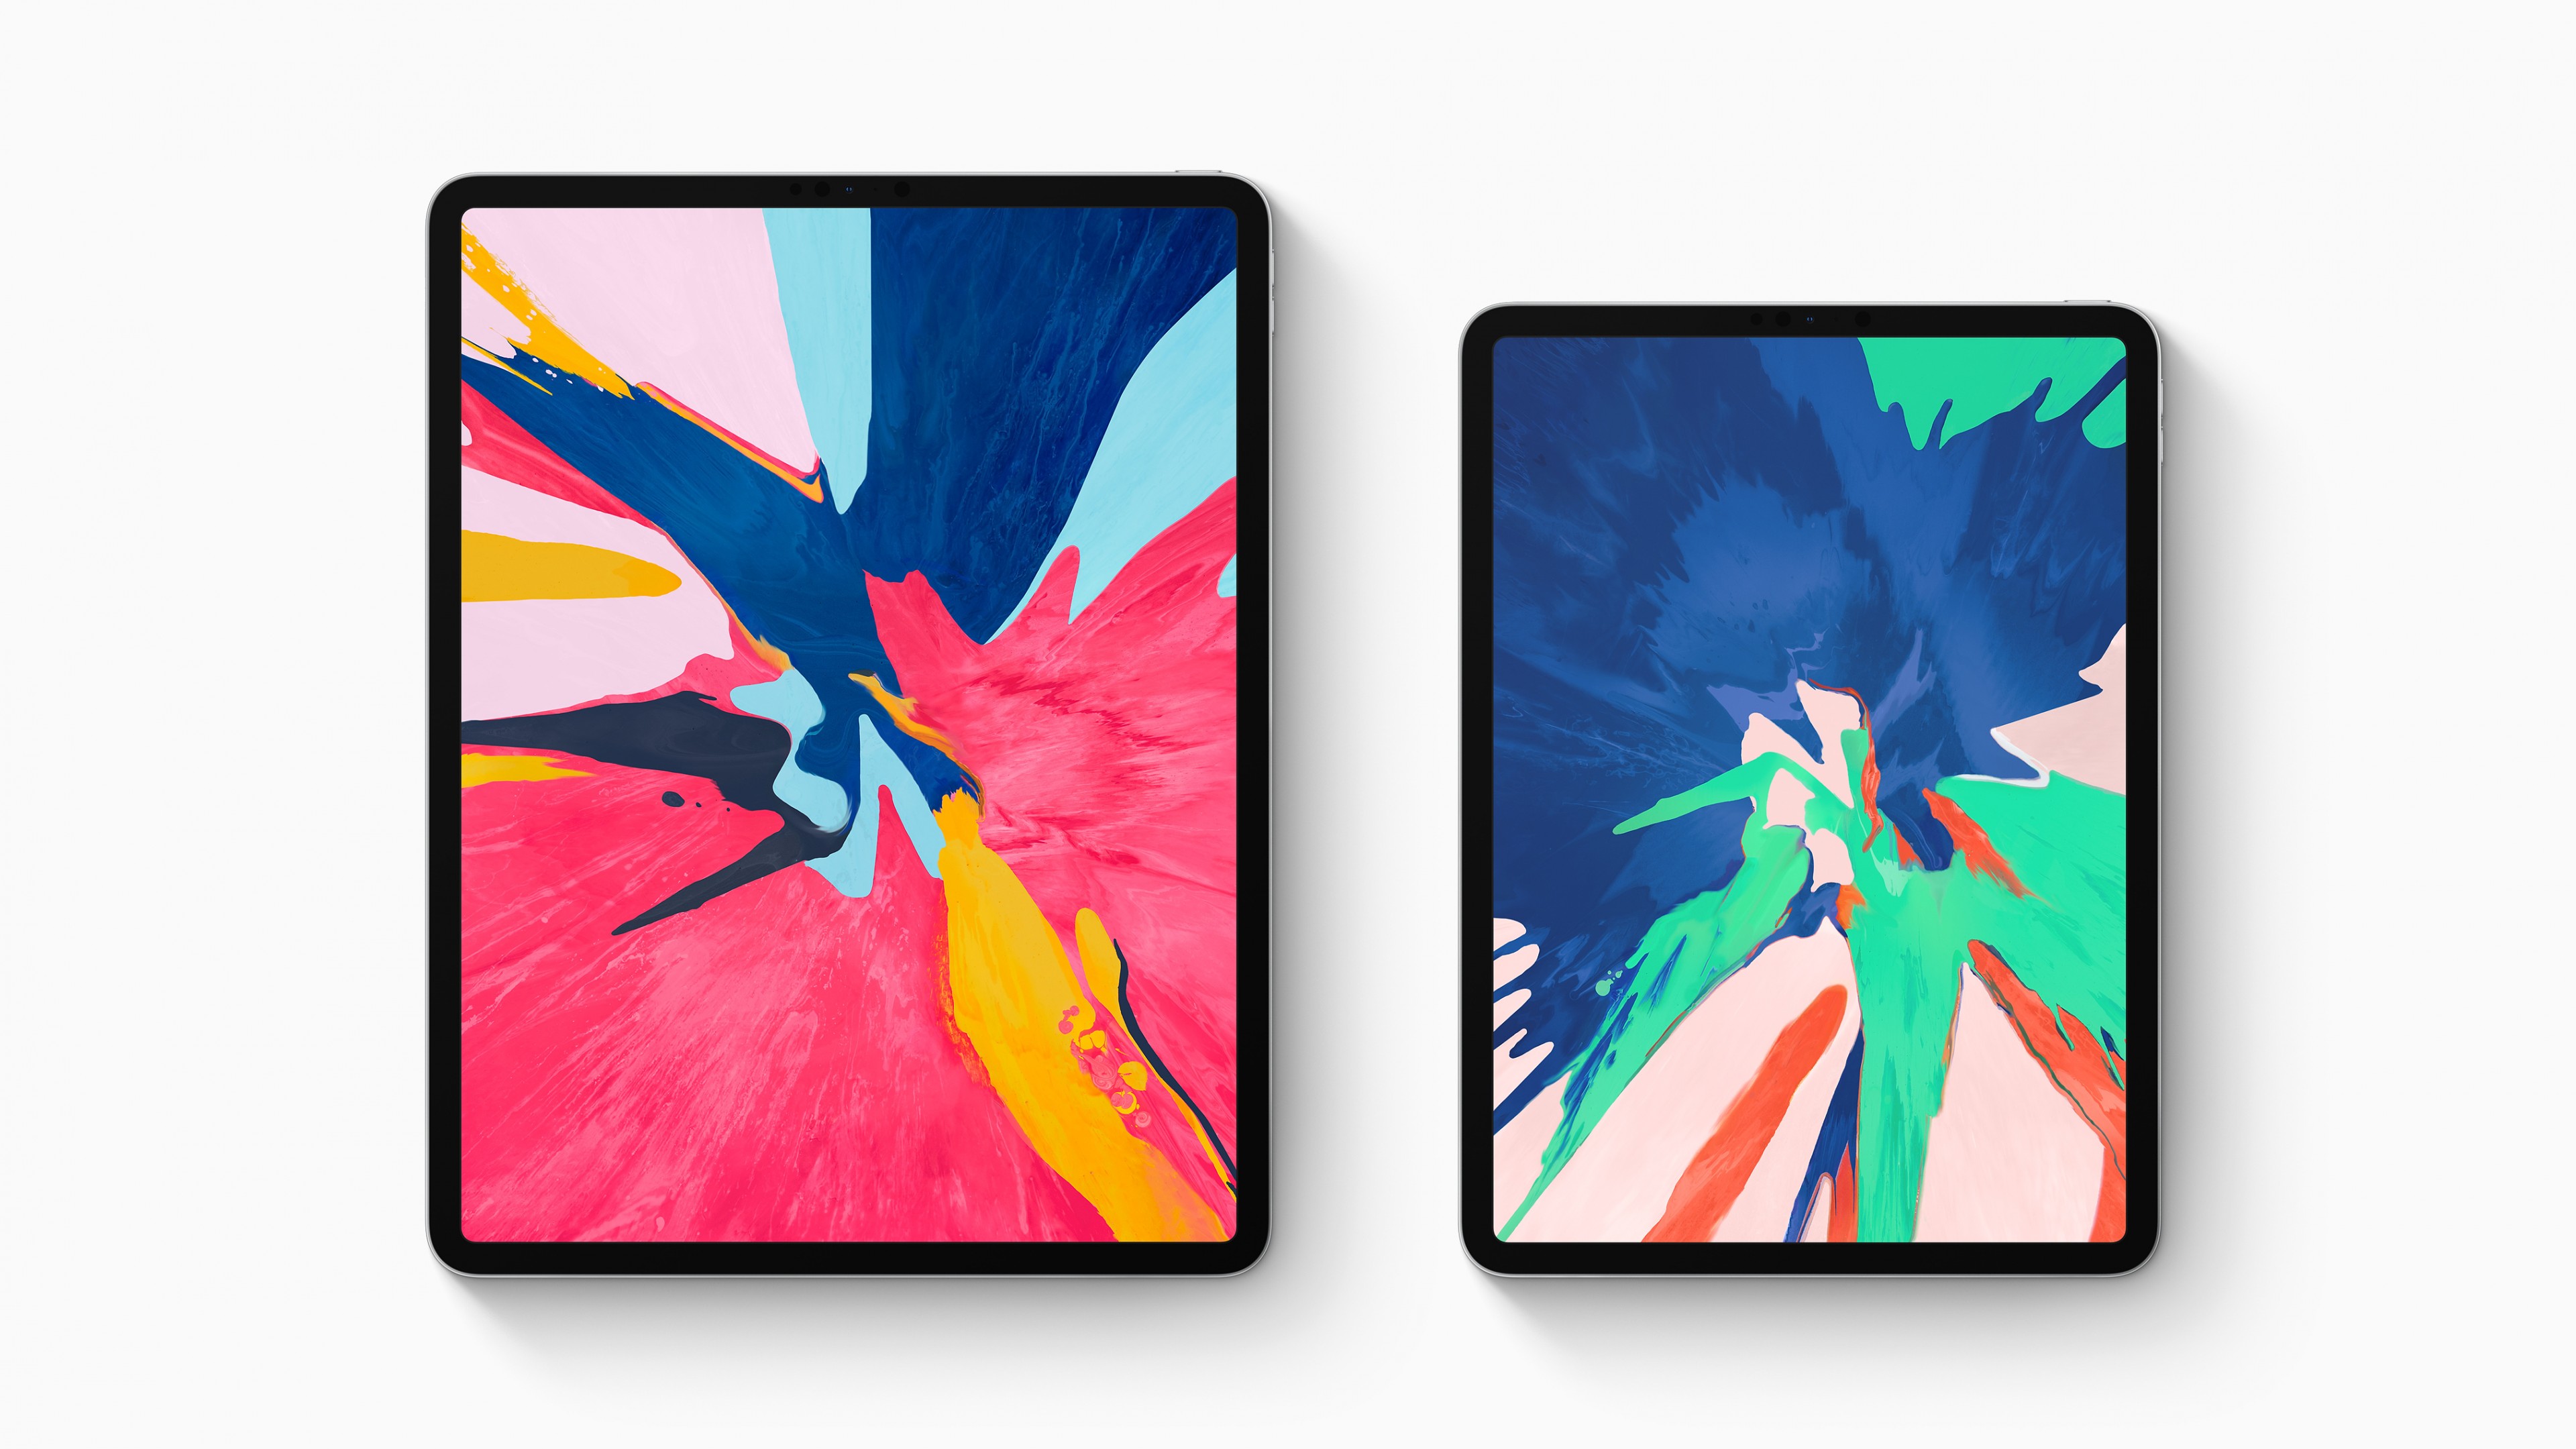 Apple Ipad Pro 2018 4k - 3840x2160 Wallpaper 